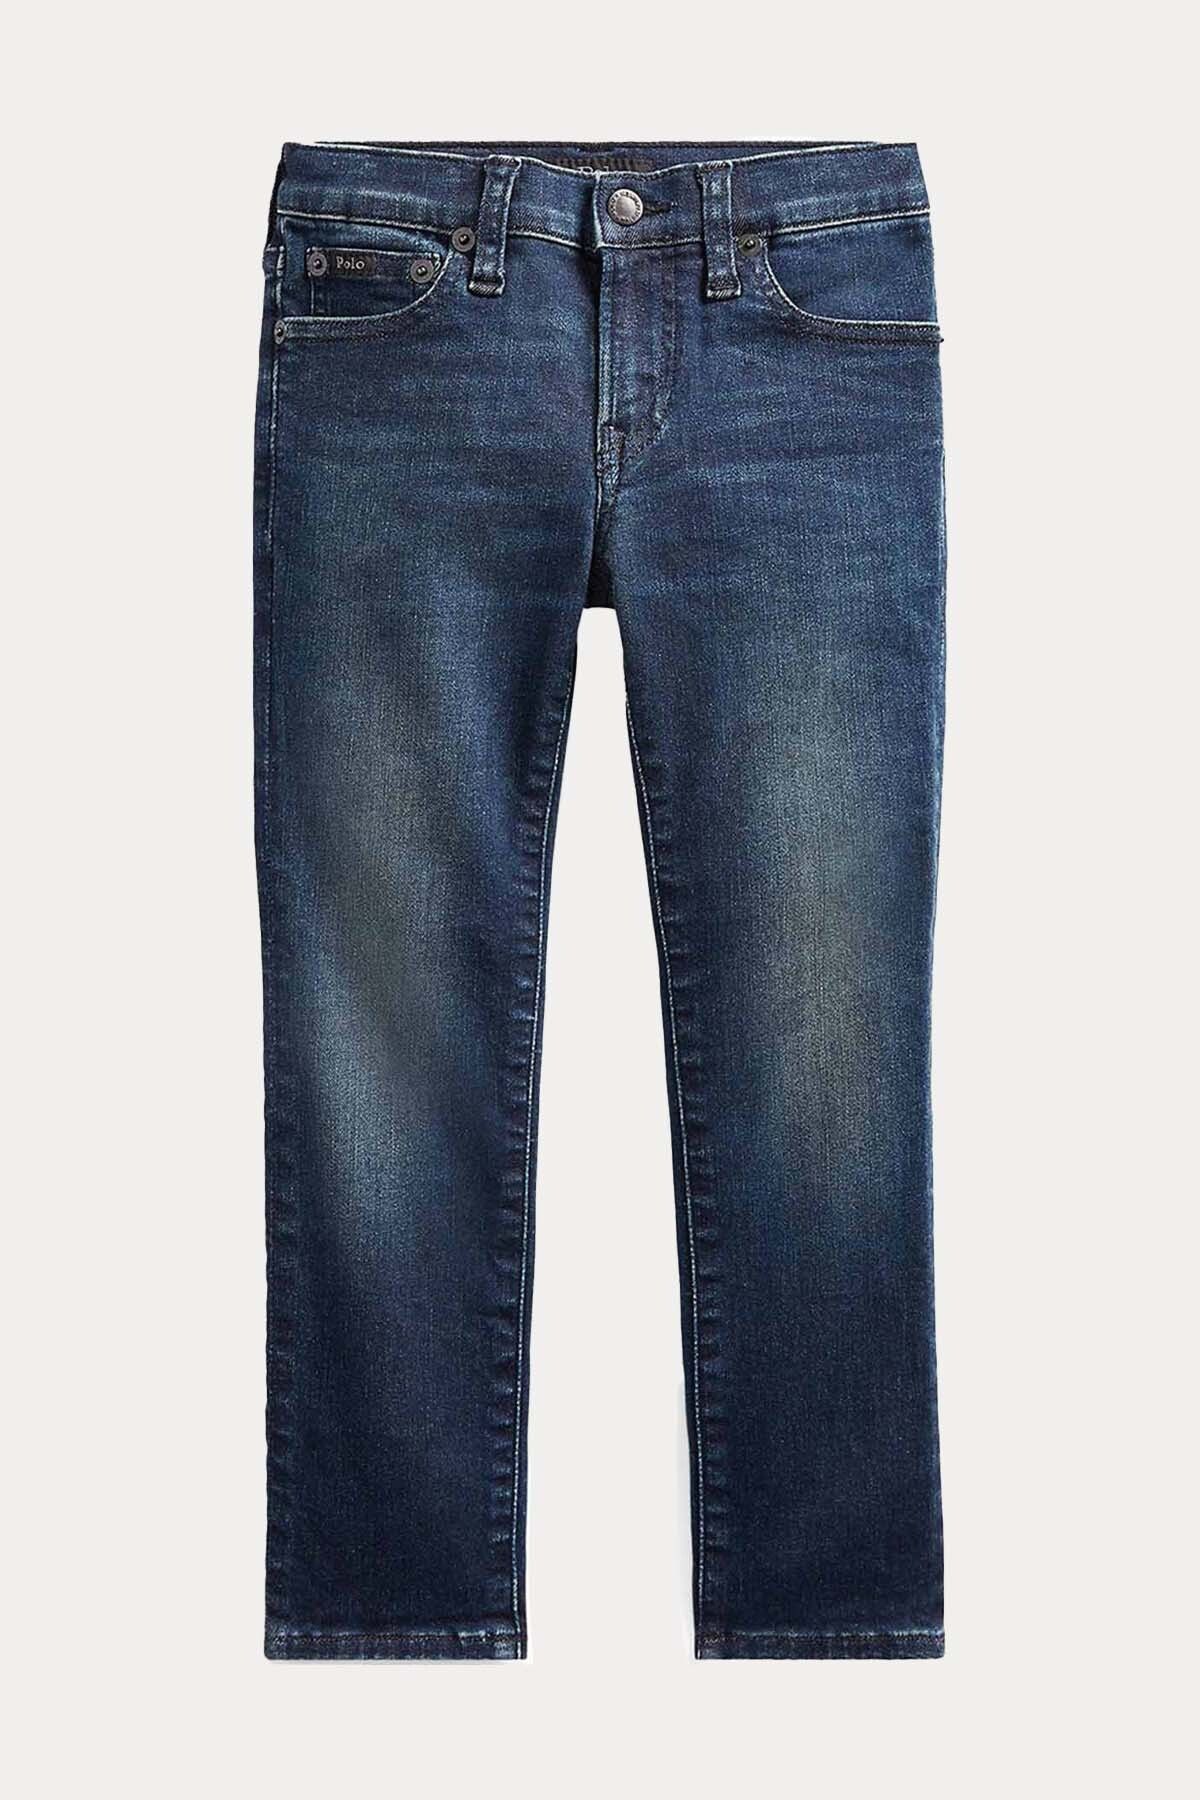 Ralph Lauren 3-5 Yaş Unisex Çocuk The Eldridge Skinny Fit Streç Jeans 4y / Lacivert